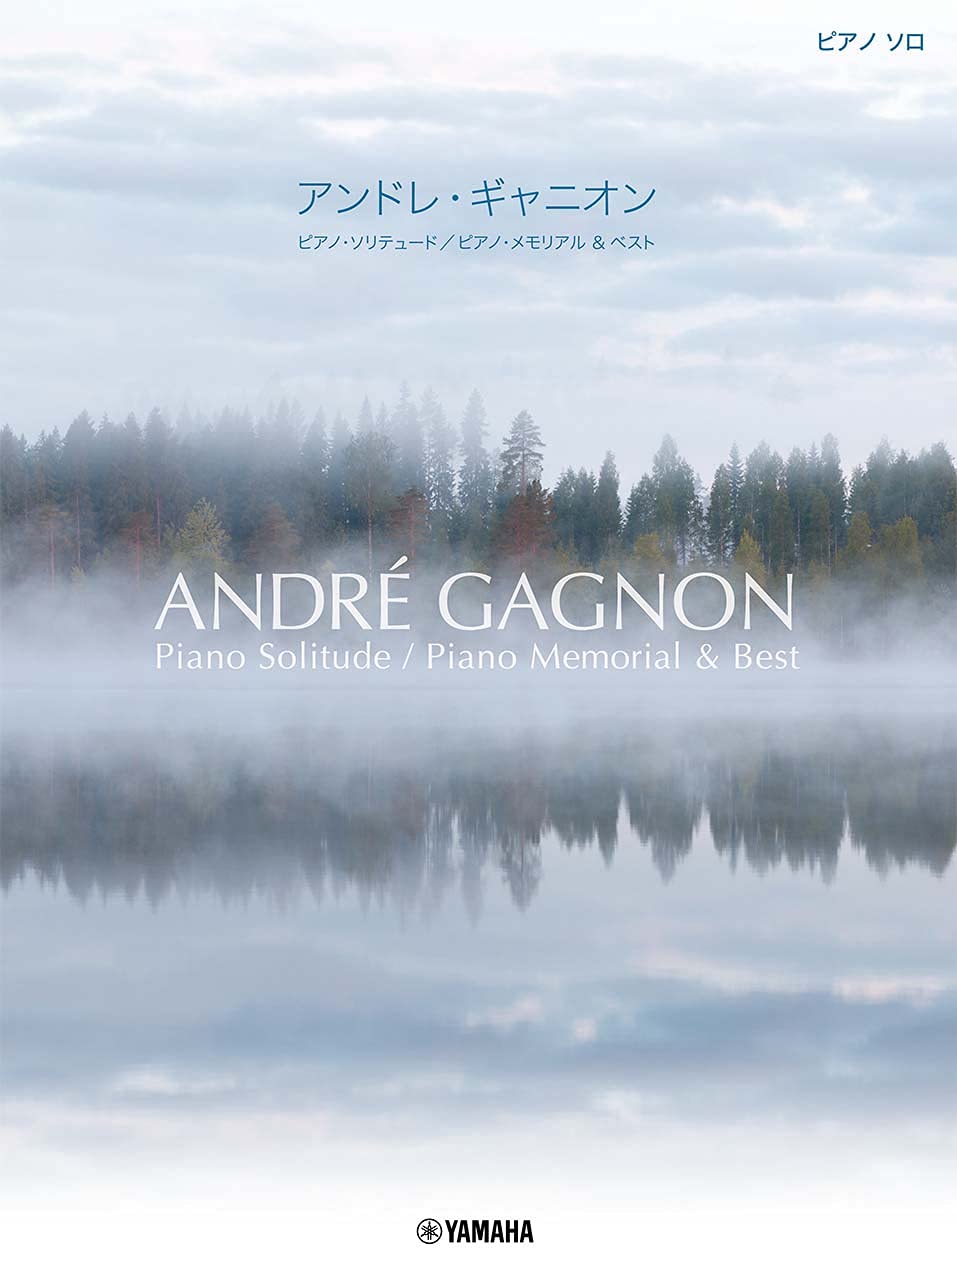 Andre Gagnon "Piano Solitude" Piano Memorial and Best for Advanced Piano Solo